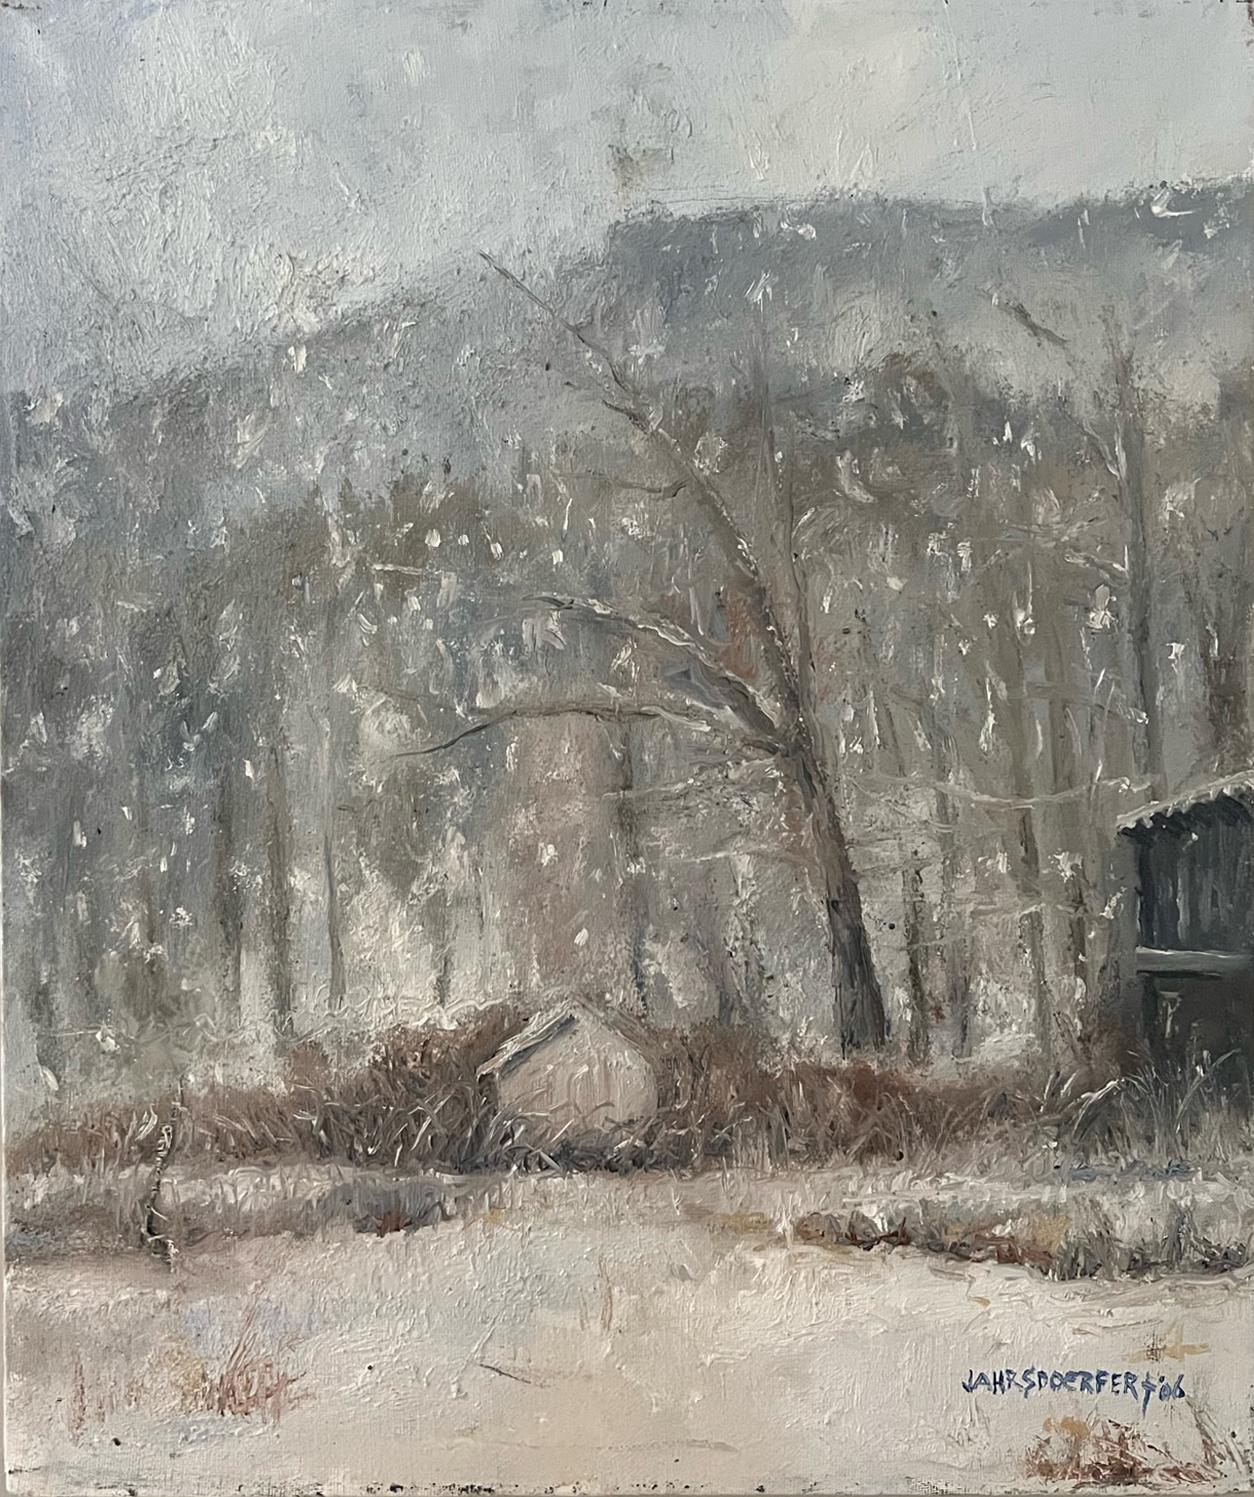 Peinture à l'huile sur toile « First Snow » de James Jahrsdoerfer, paysage d'hiver enneigé - Painting de James Jahrsdoerfer 